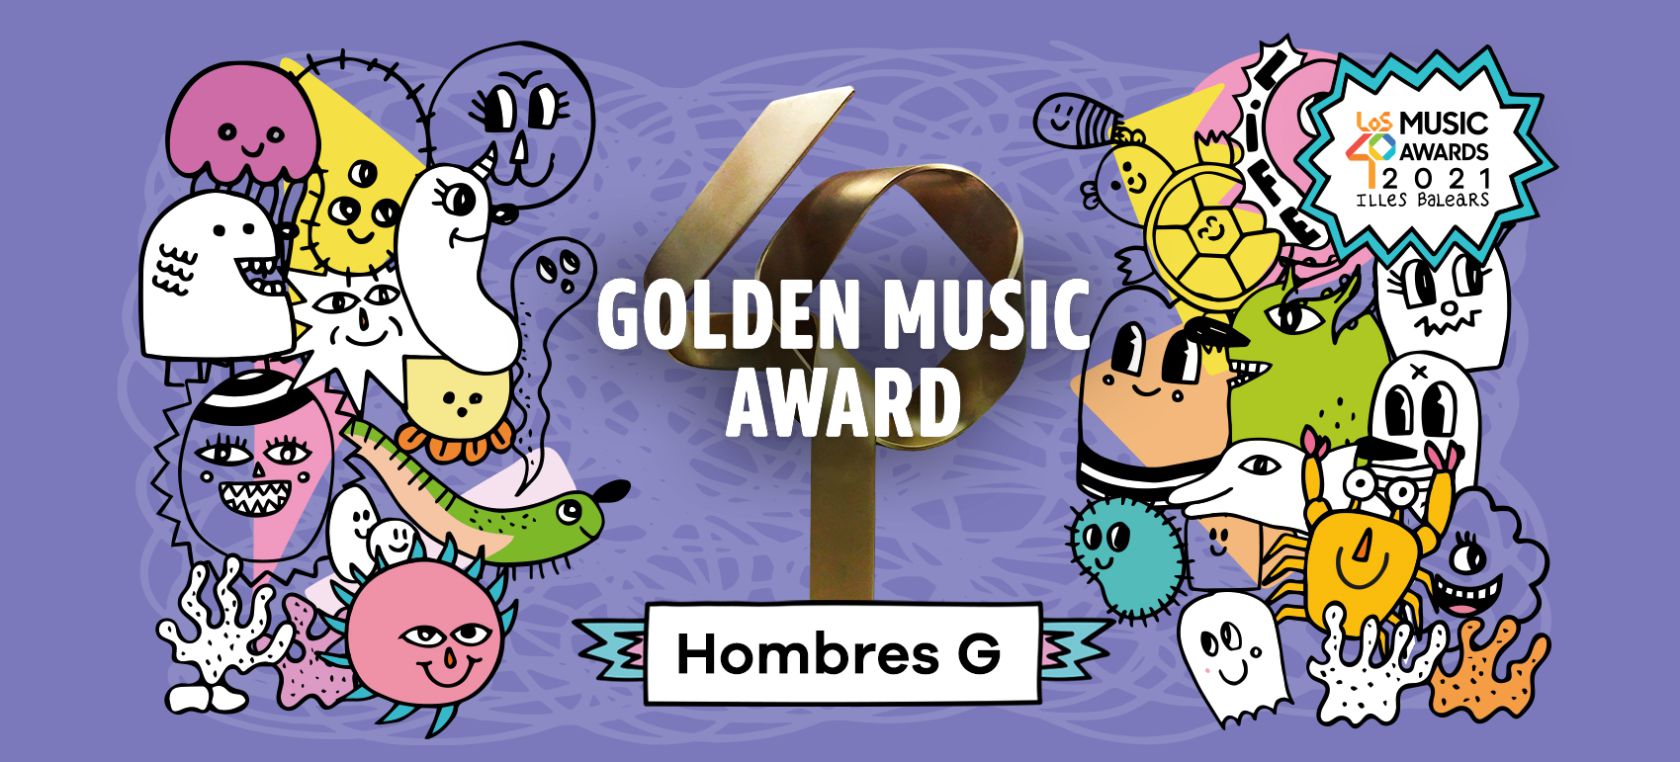 Escucha la playlist de LOS40 de Hombres G, ganadores del Golden Music Award 2021